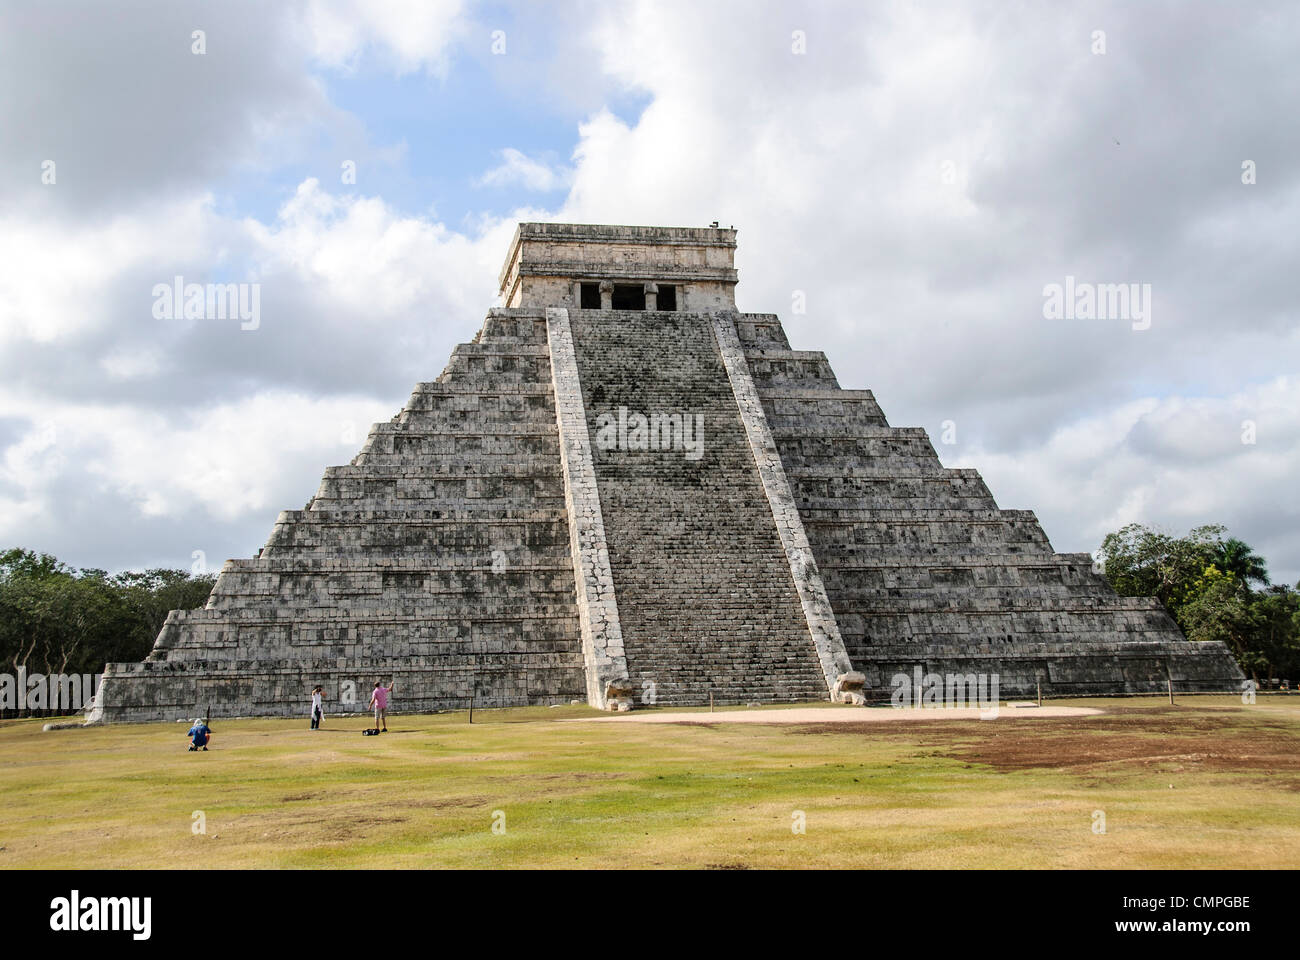 CHICHEN ITZA, Mexique - Touristes debout devant le Temple de Kukulkan (El Castillo) à la Zone archéologique de Chichen Itza, les ruines d'une importante ville de la civilisation Maya au coeur de la péninsule du Yucatan au Mexique. Banque D'Images